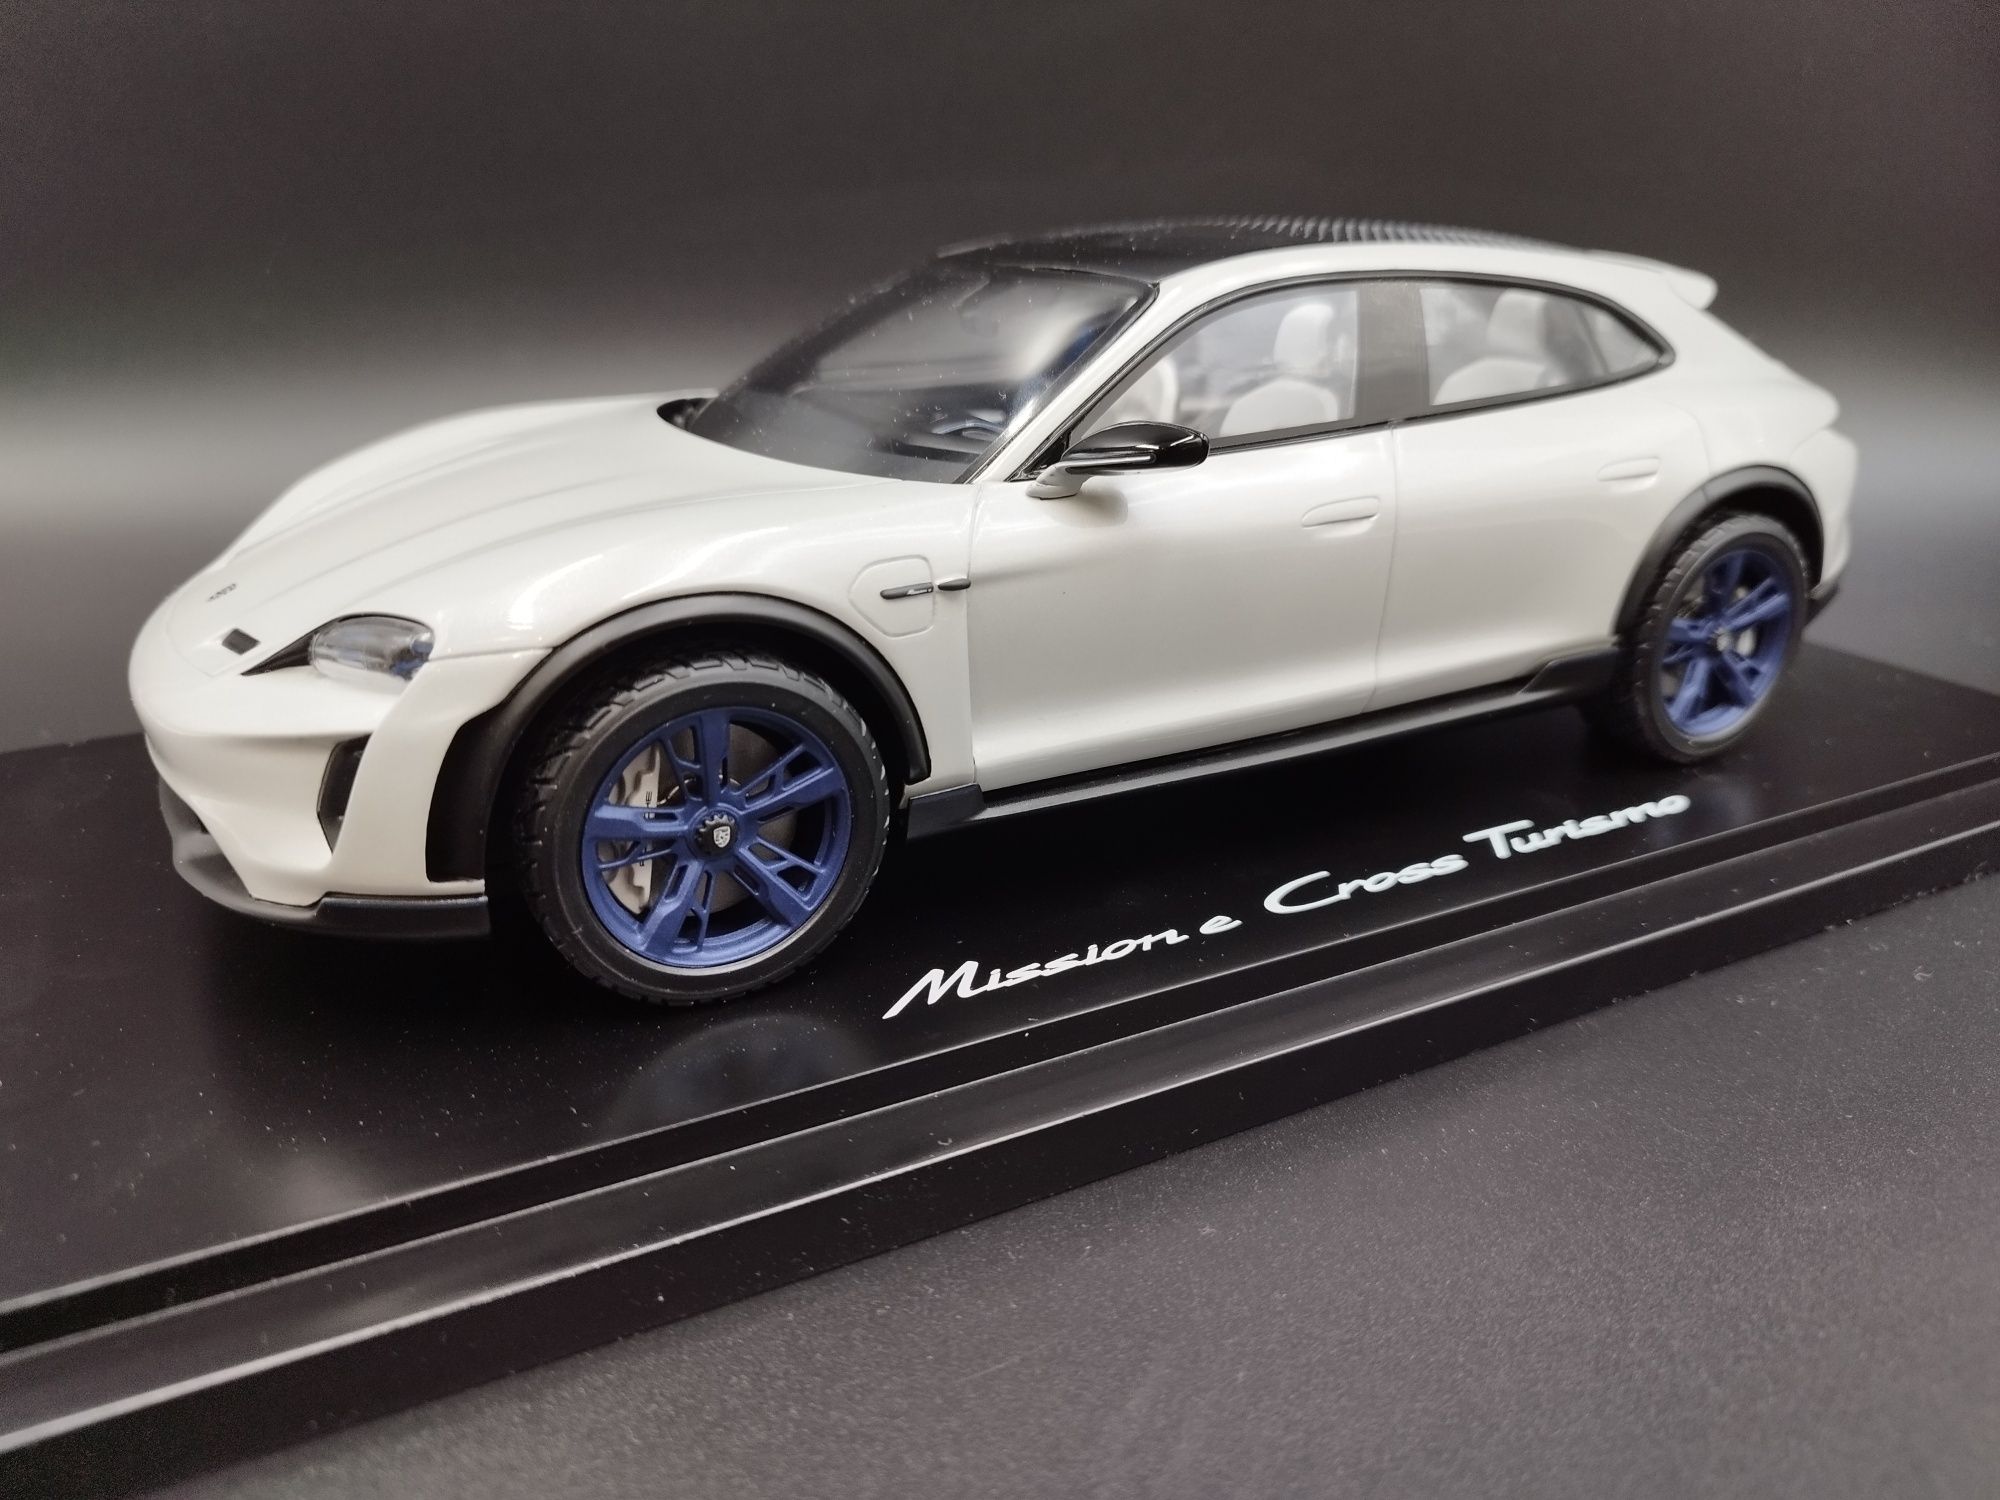 1:18 Spark Porsche Mission E Cross Turismo model